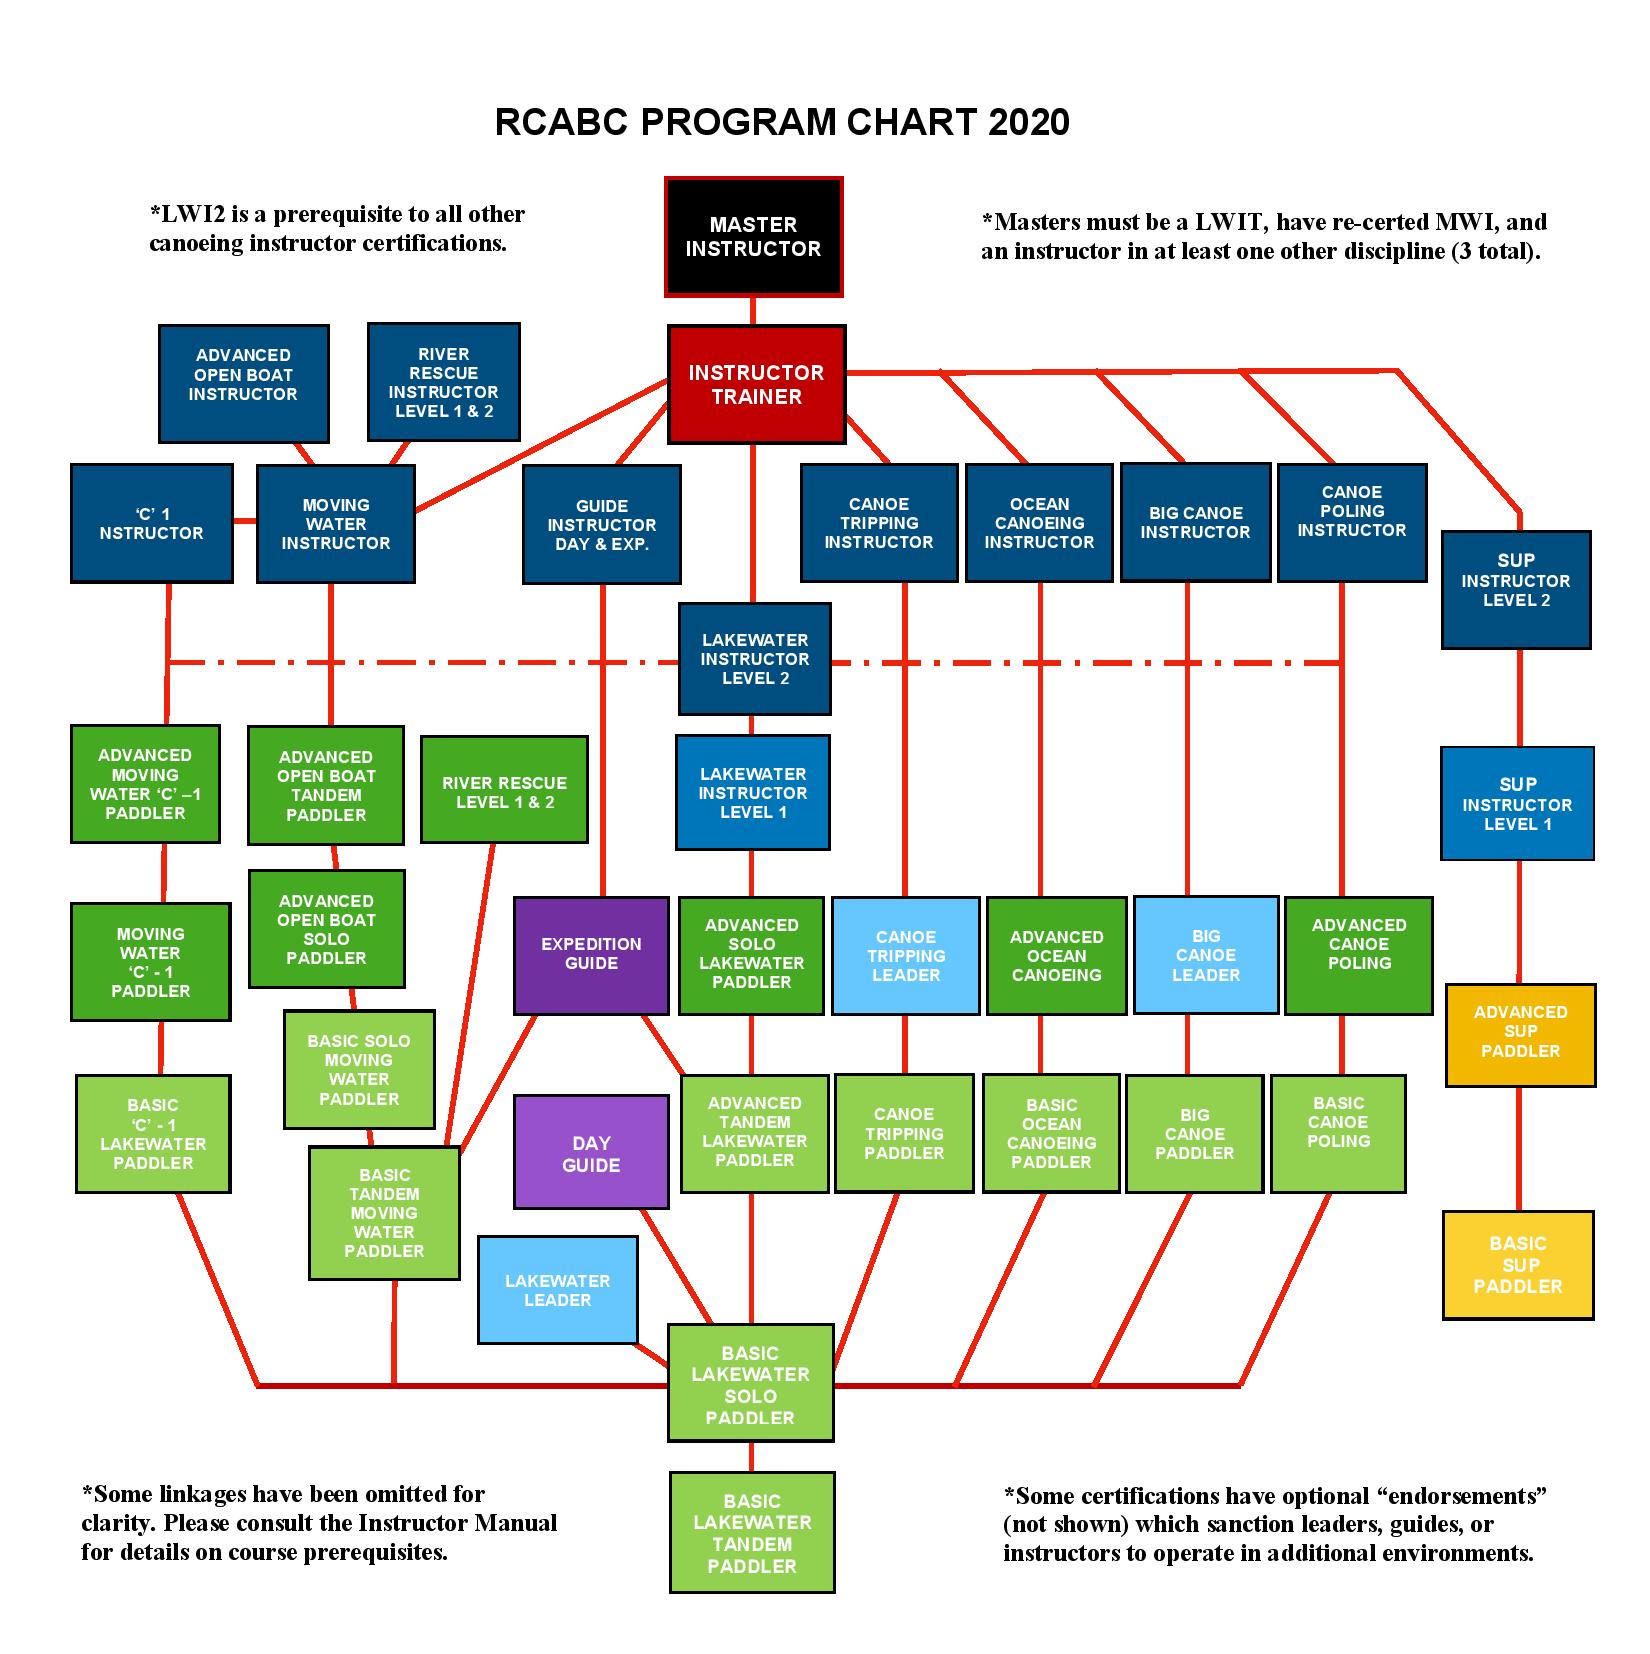 RCABC PROGRAM CHART 2020 image colour